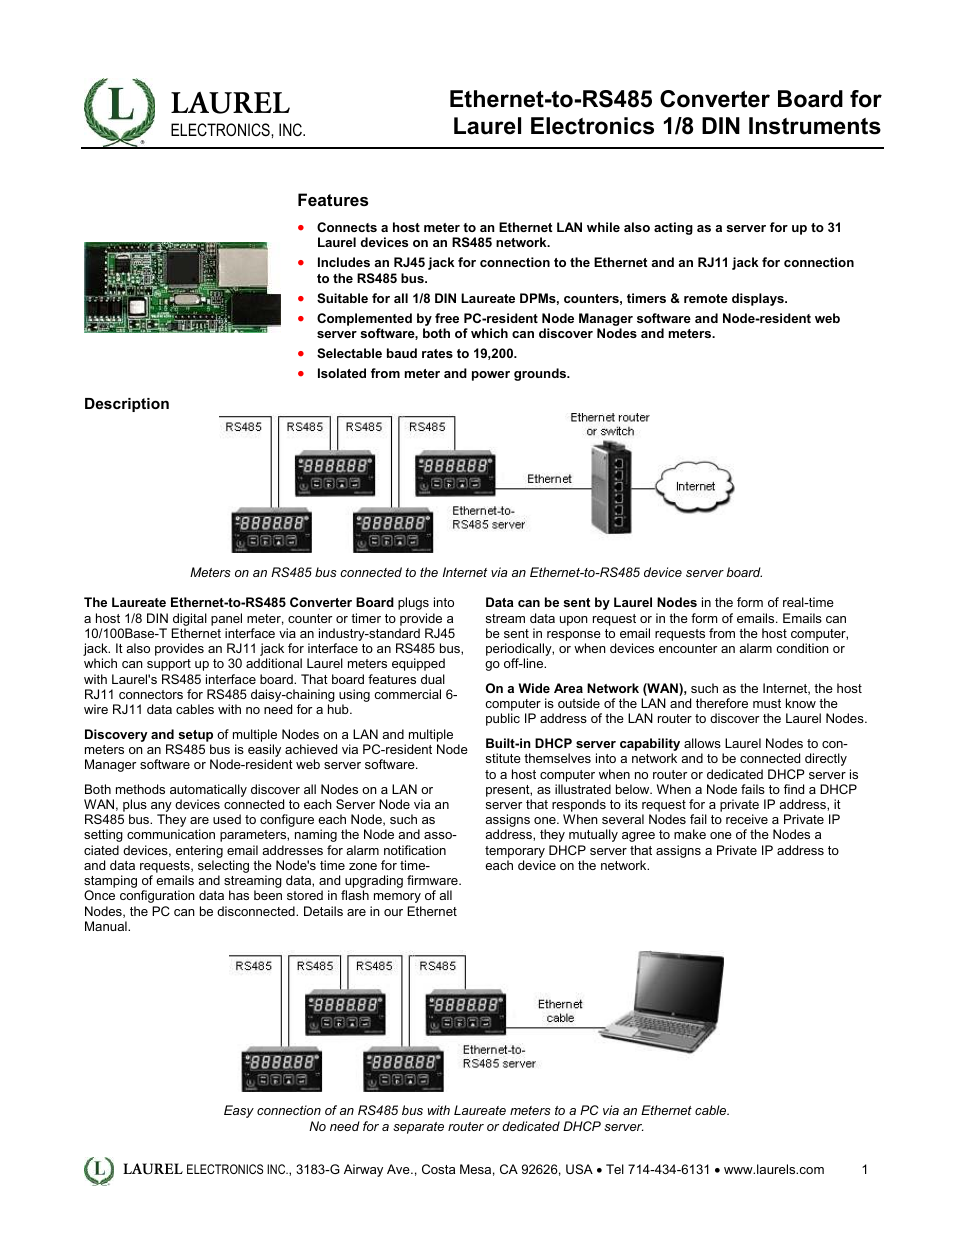 Ethernet-to-RS485 Converter Board for Laurel Electronics 1_8 DIN Instruments